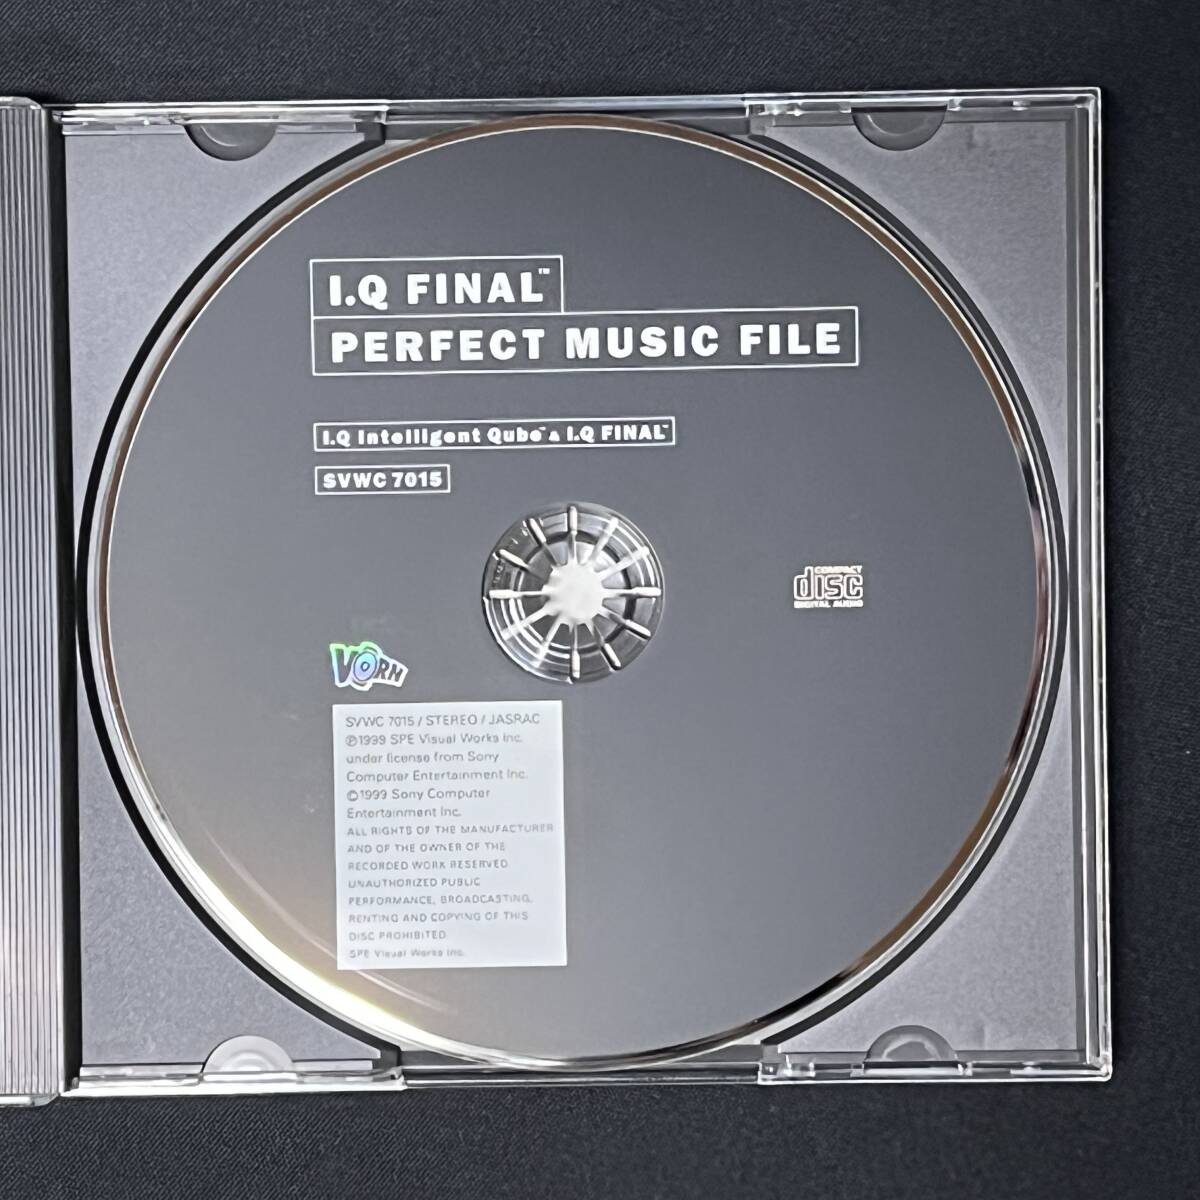 *20-722 I.Q FINAL PERFECT MUSIC FILE саундтрек CD